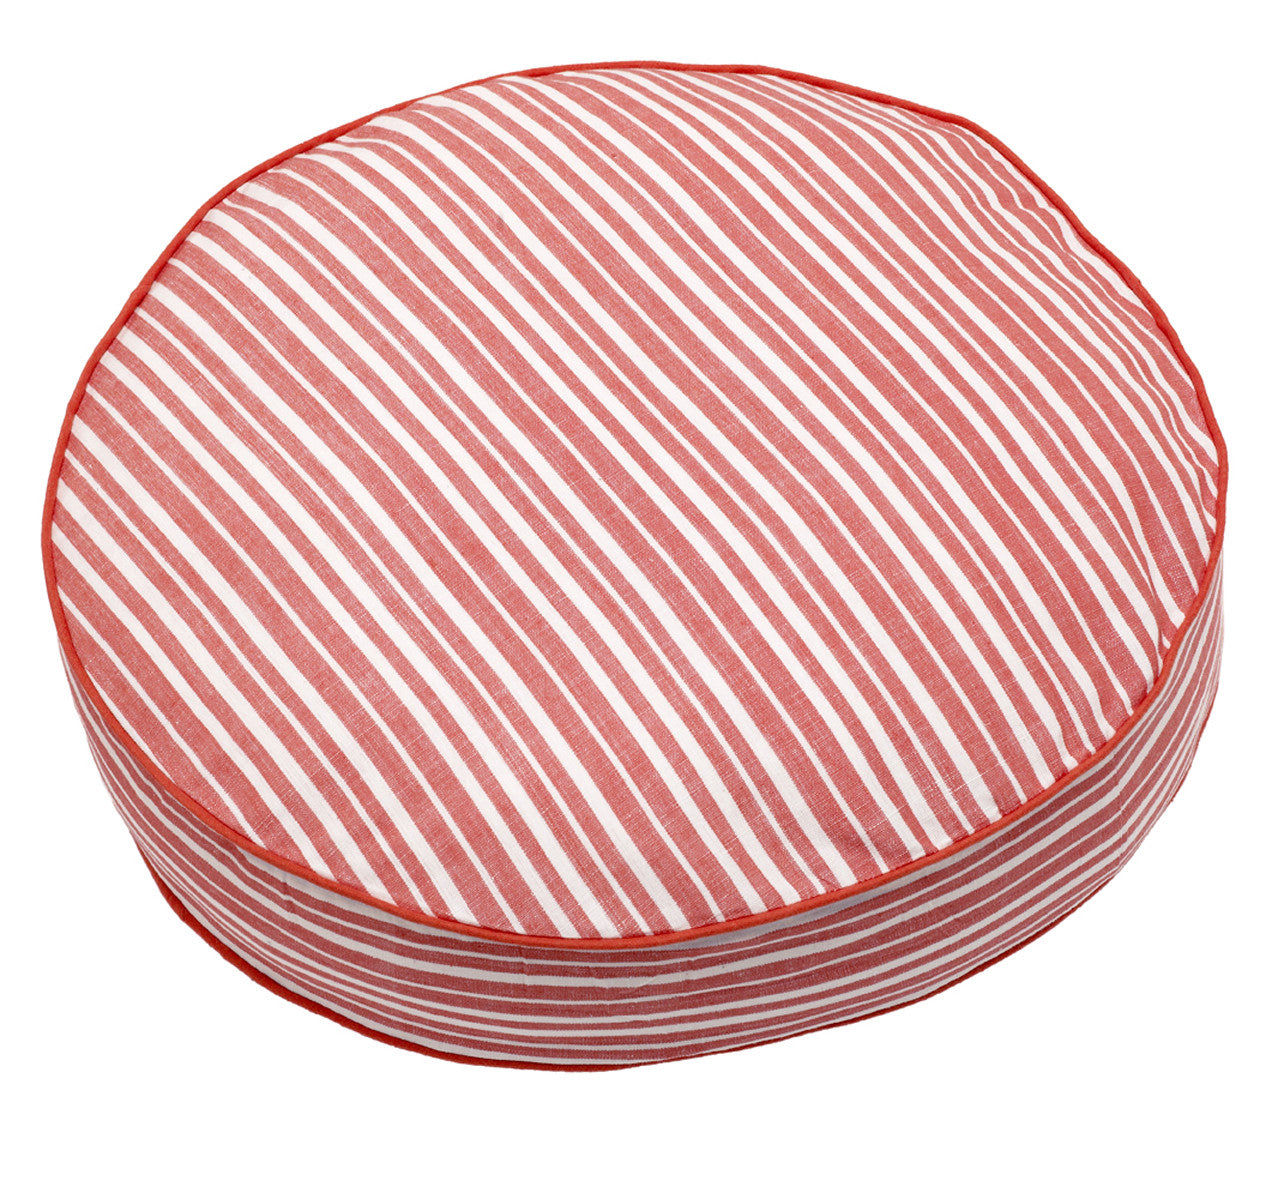 Palermo Ticking Stripe Round Floor Cotton Linen Cushion - Geranium Red 48cm diameter